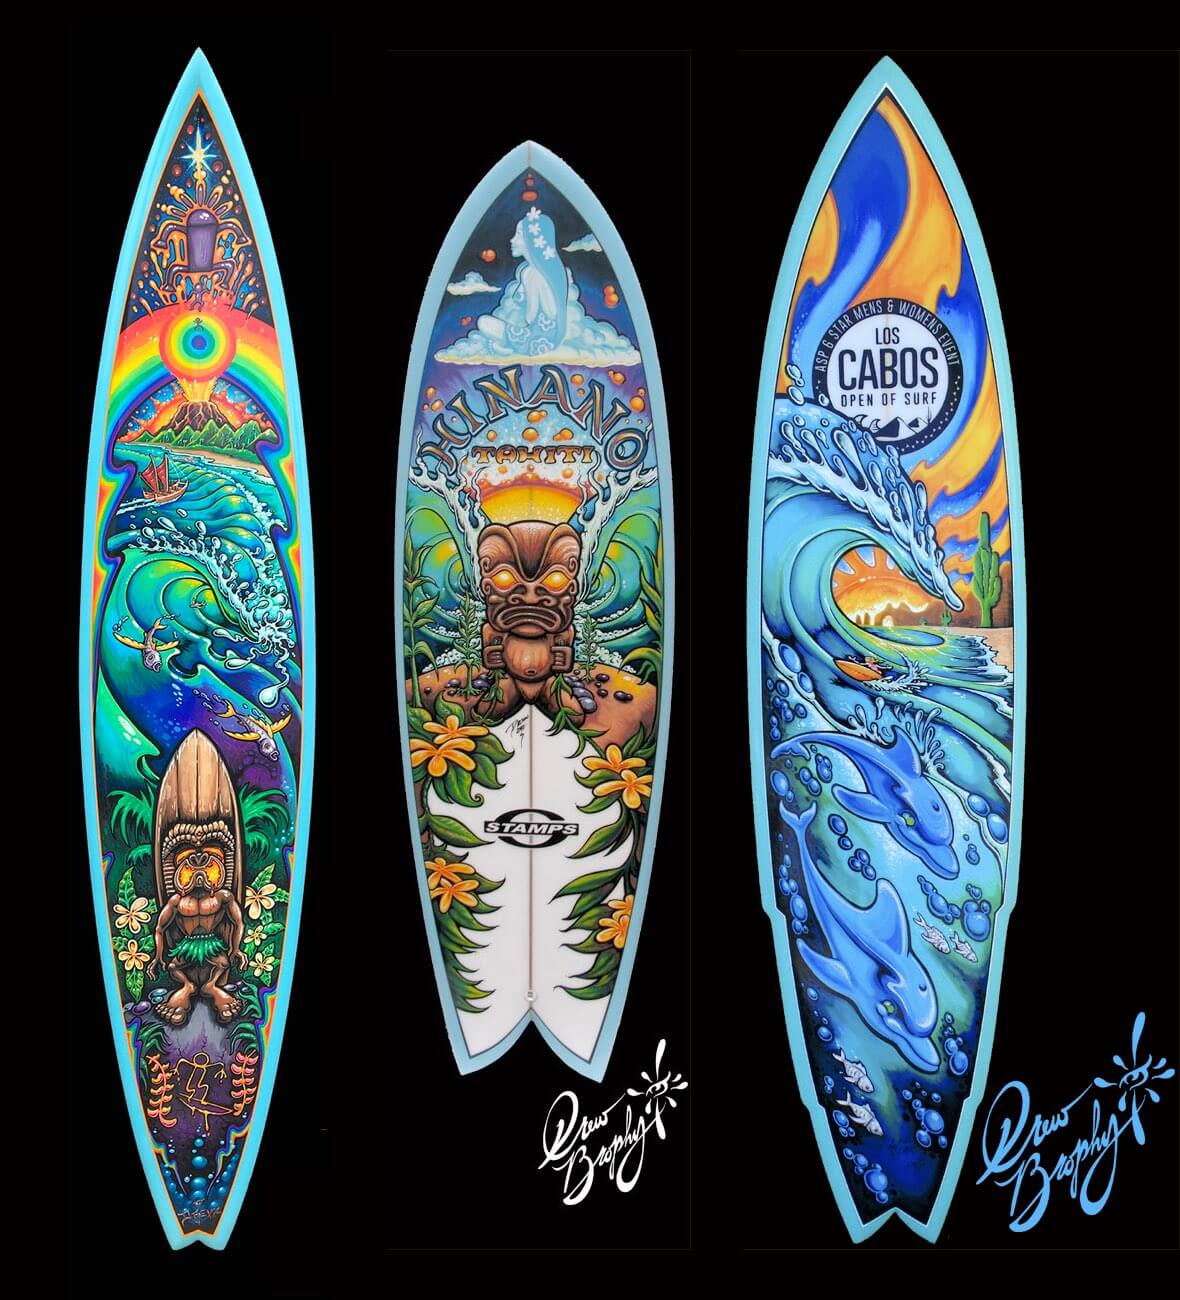 Surfboard art by Drew Brophy